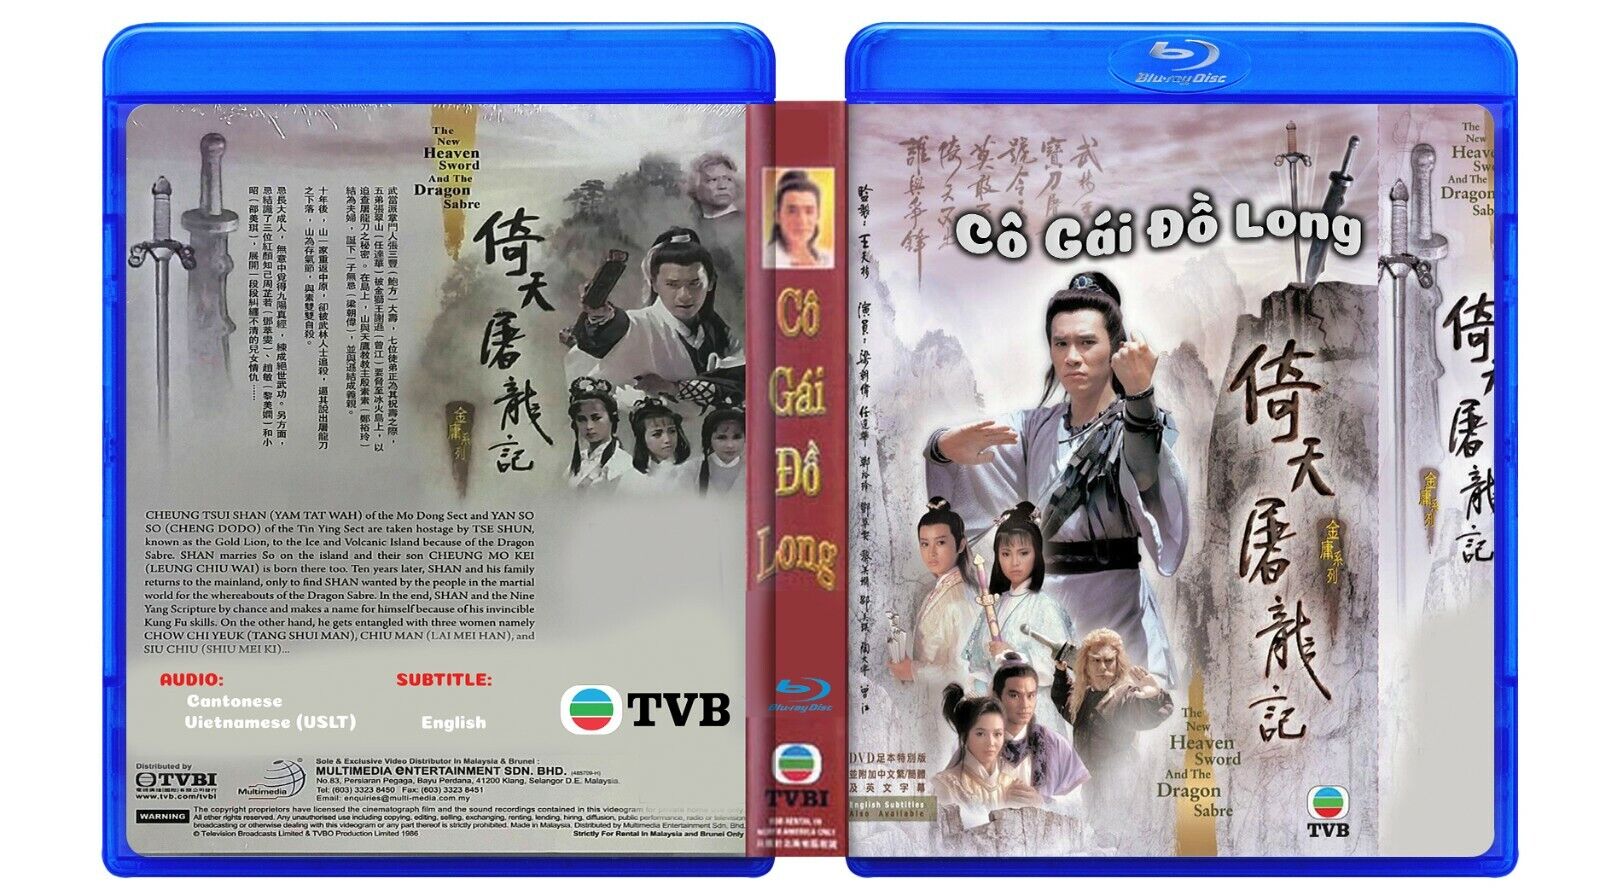 CO GAI DO LONG 1986 - Phim Bo Hong Kong TVB Blu-Ray - US LONG TIENG